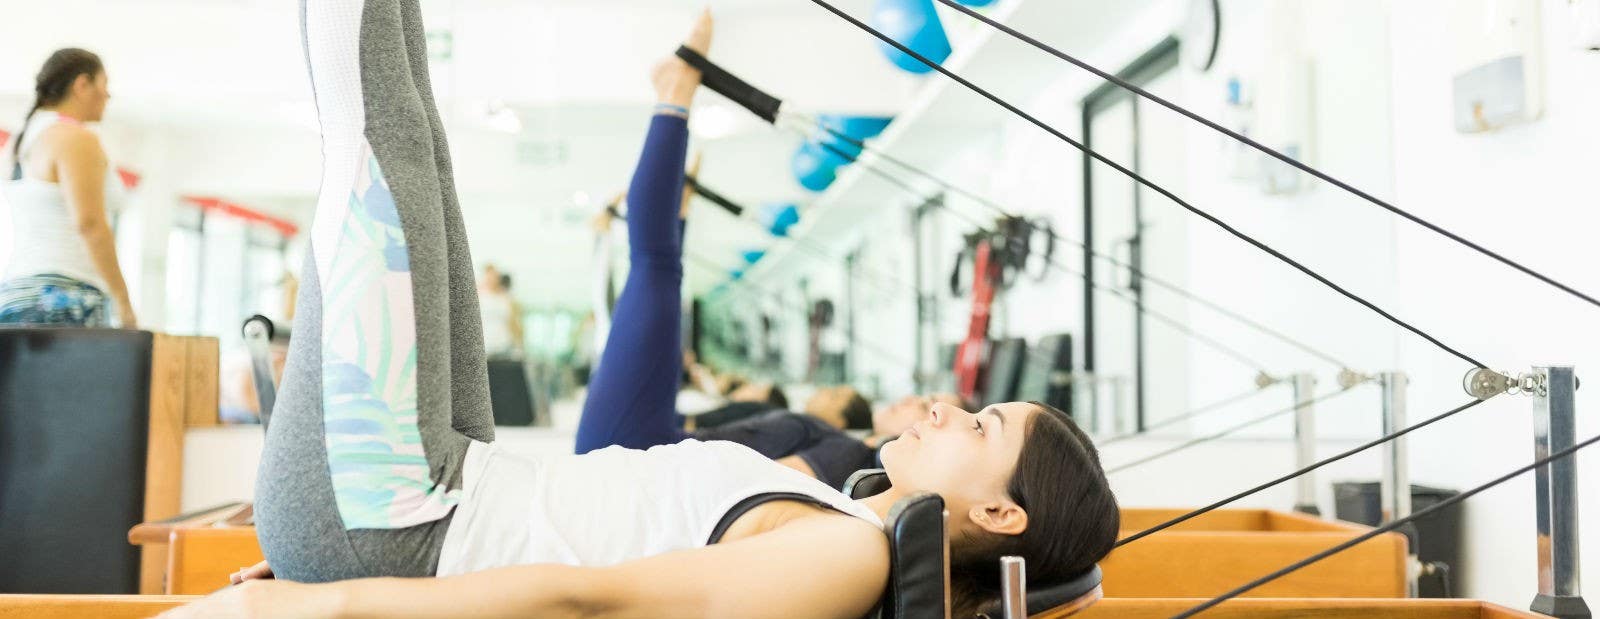 20 MIN PILATES WORKOUT ON REFORMER, full pilates workout on reformer 20  minutes 